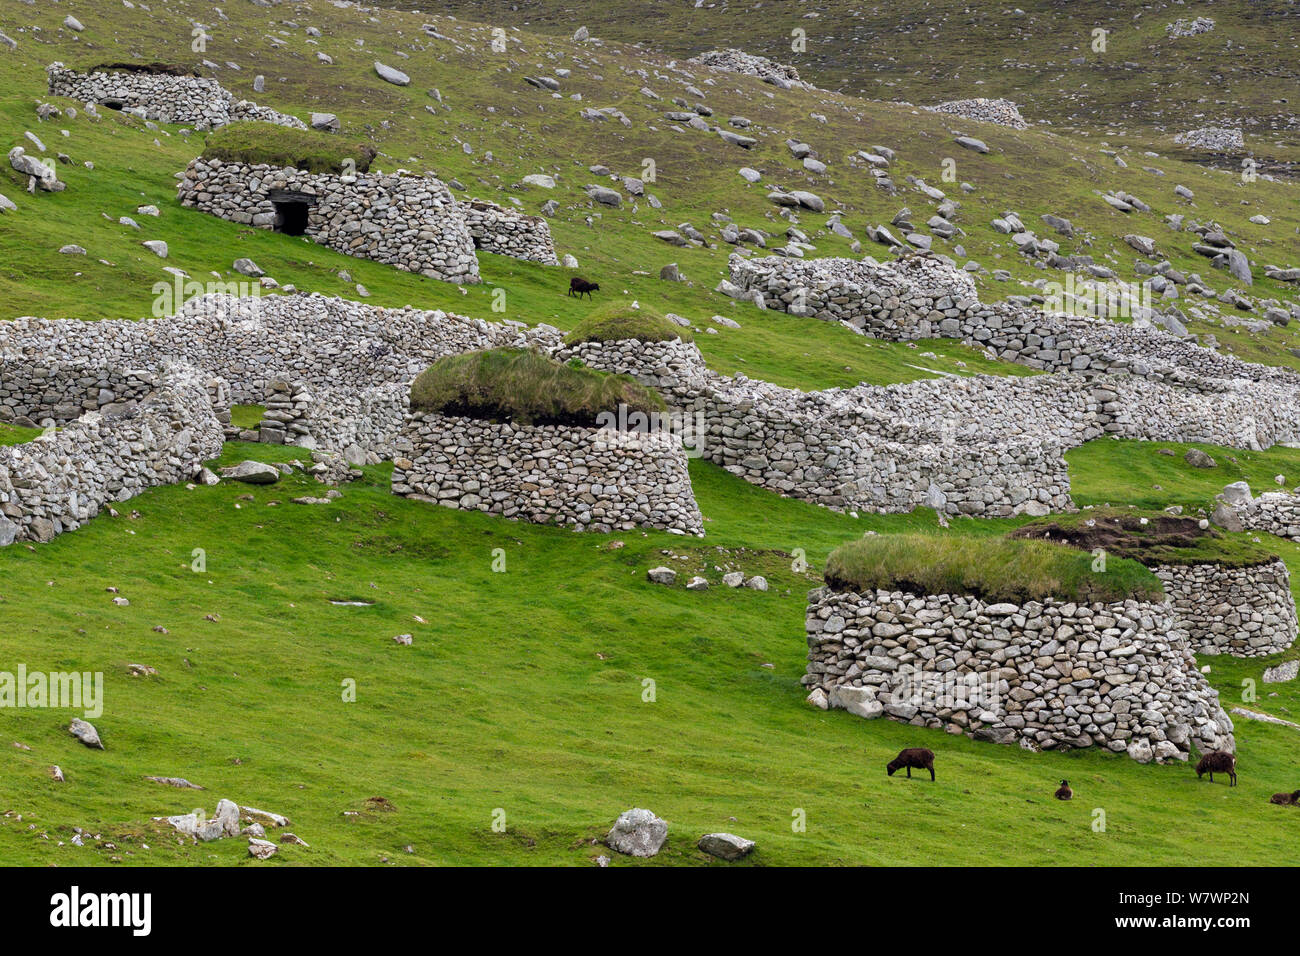 Las ovejas Soay (Ovis aries) de alimentación entre los listones y las paredes de piedra en la isla principal de Hirta. St Kilda, Hébridas Exteriores, Escocia. De junio. Foto de stock